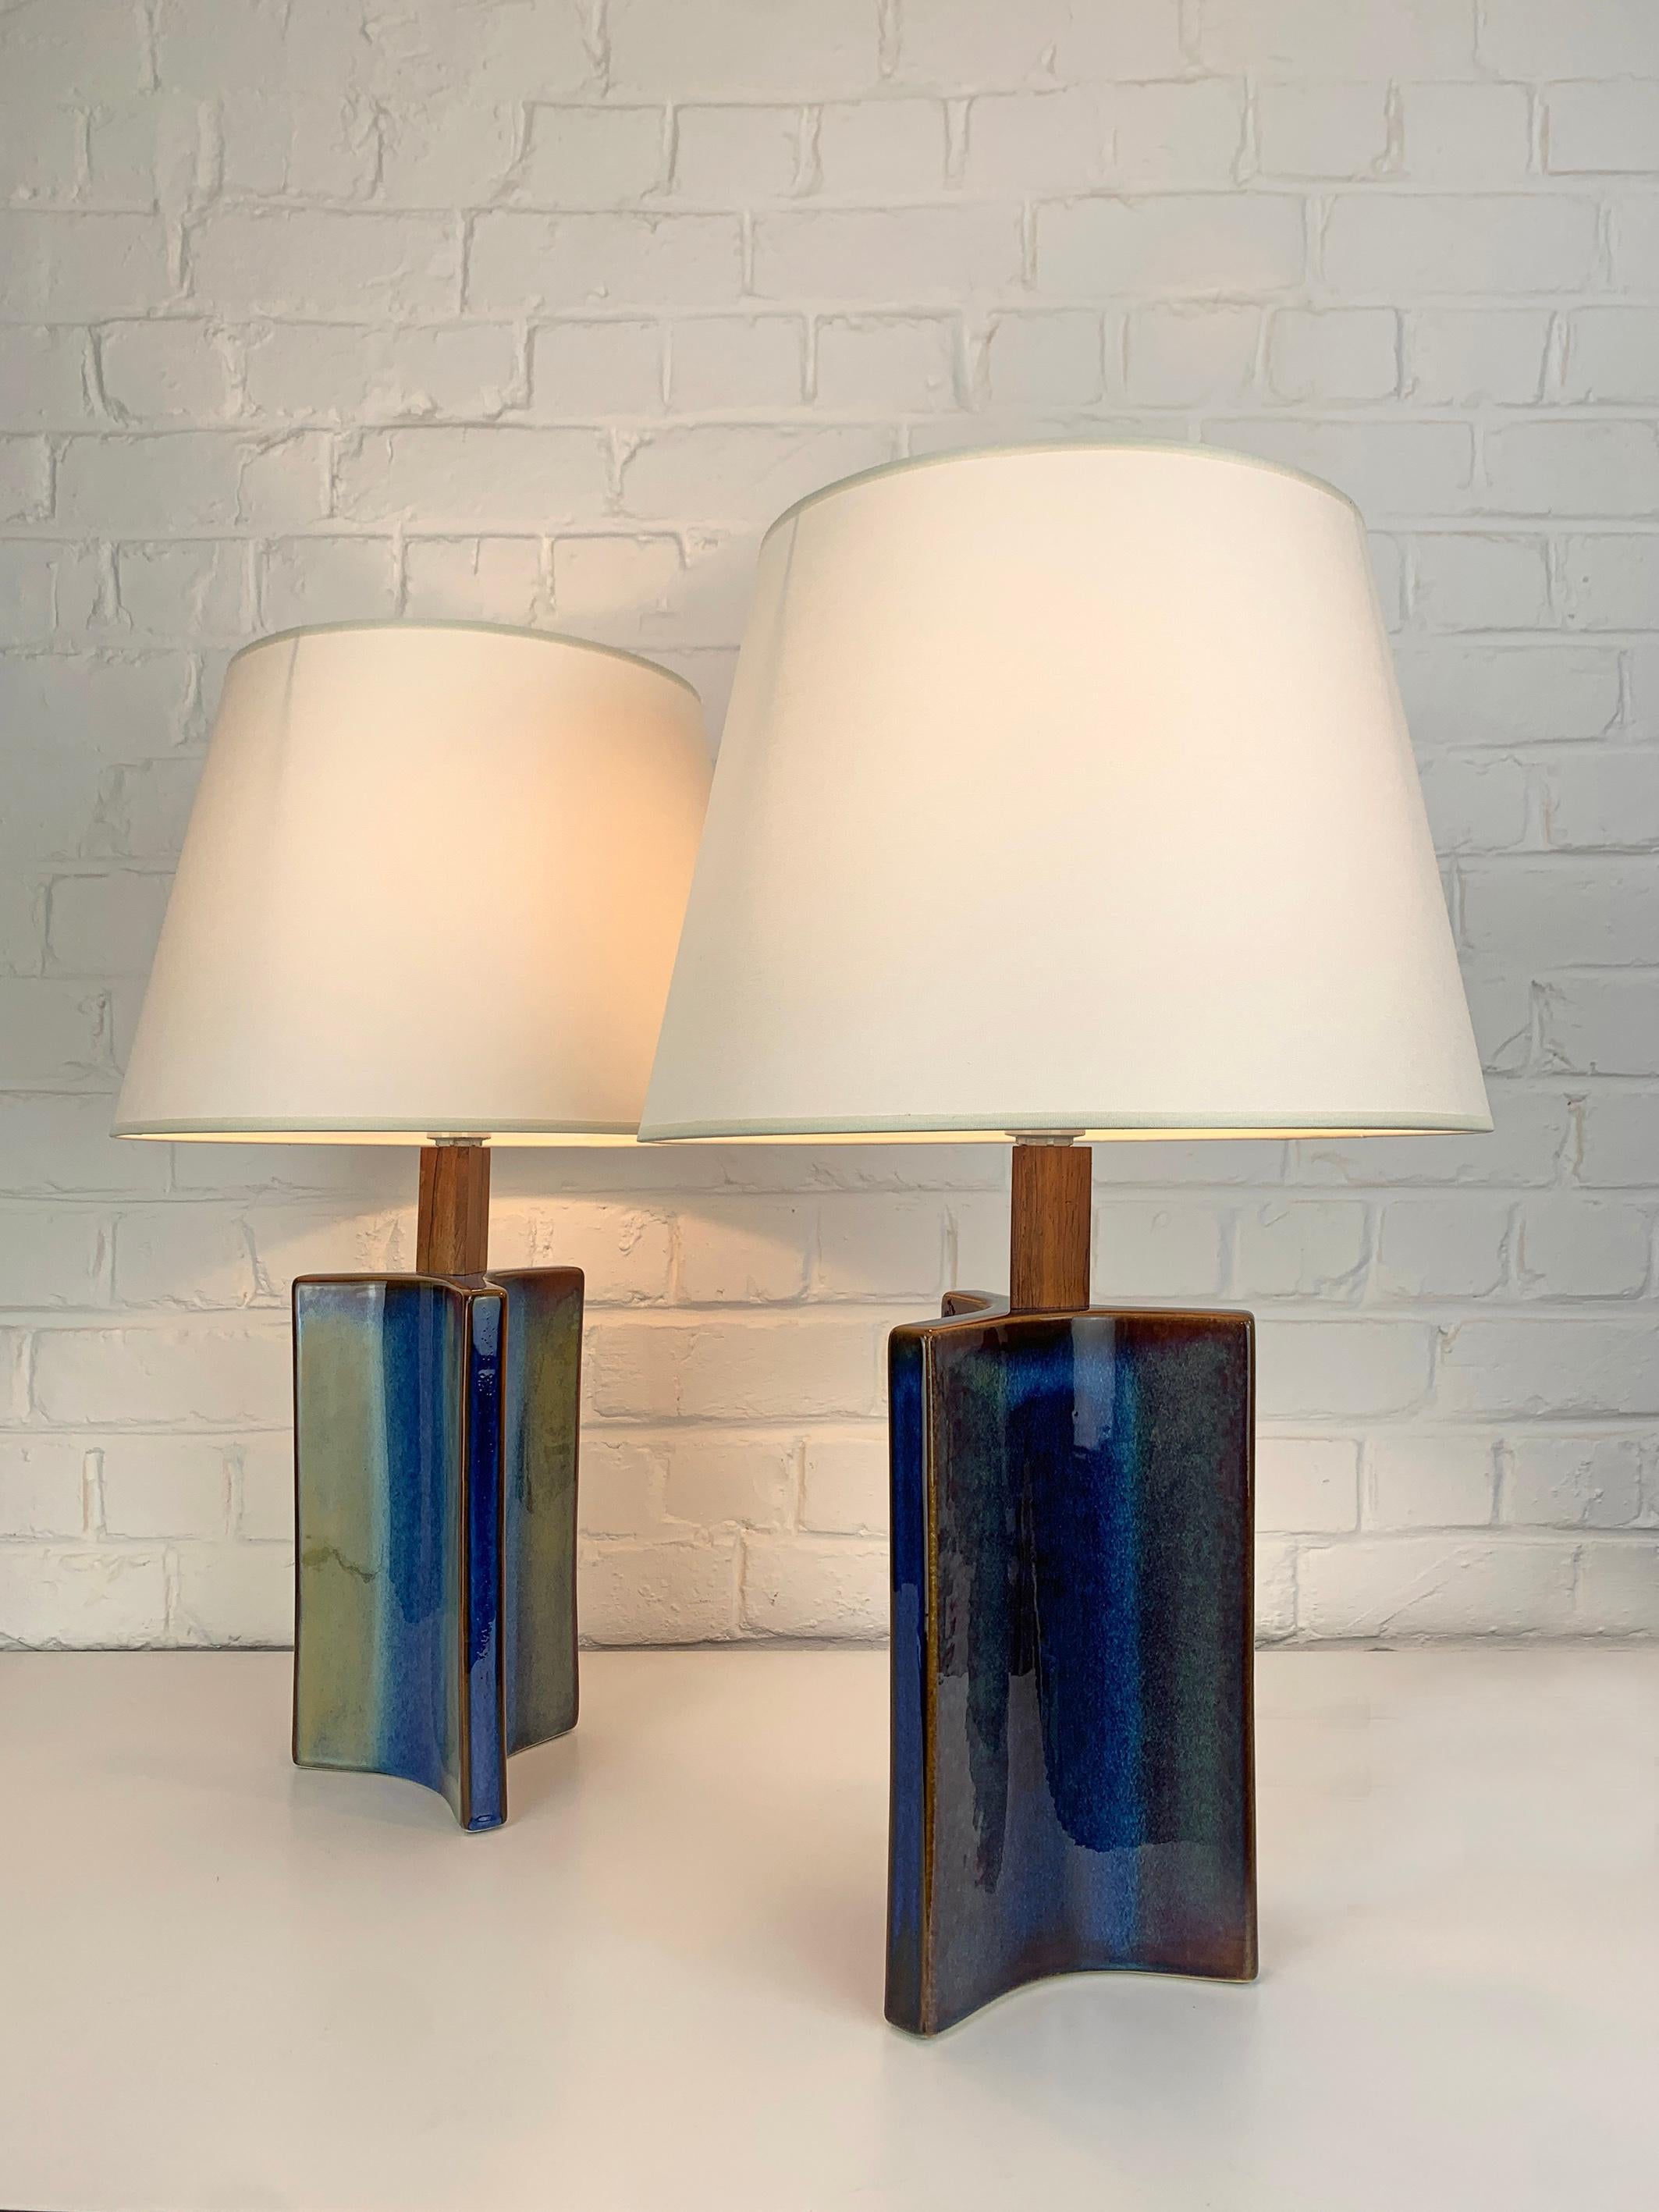 Ein Paar dänische Steingut-Tischlampen aus der Mitte des Jahrhunderts (1960-70). Glasiertes Steingut und Teakholz.

Skulpturale dreieckige Lampenfüße, blaue Glasur mit grün/braunen Farbeffekten. Sehr ungewöhnliche Form!

Hergestellt von Søholm